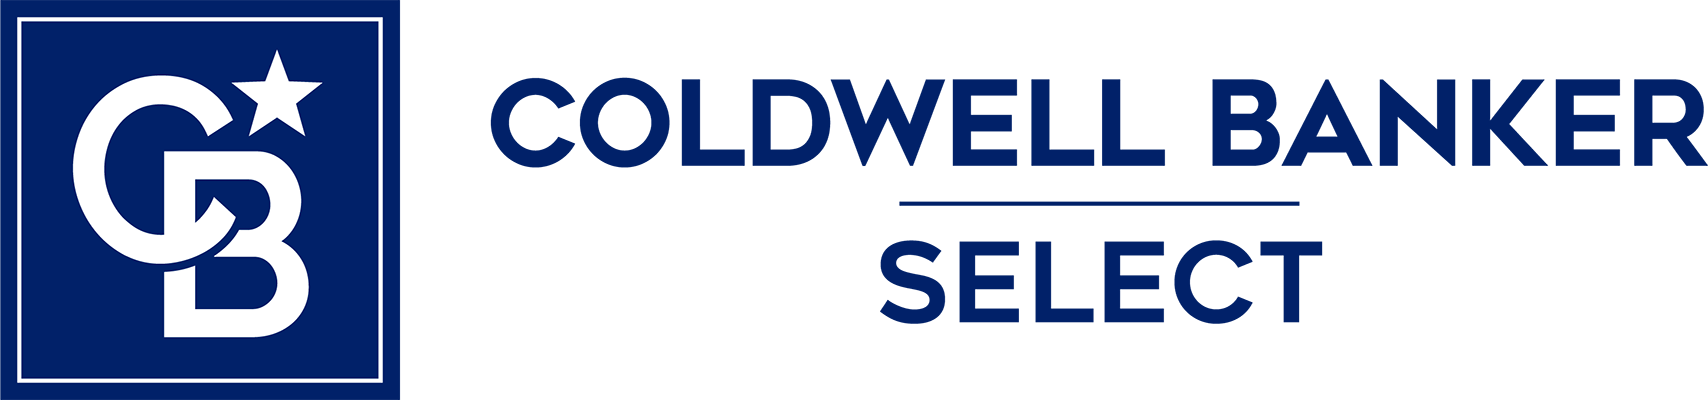 Sharon Craig - Coldwell Banker Select Logo